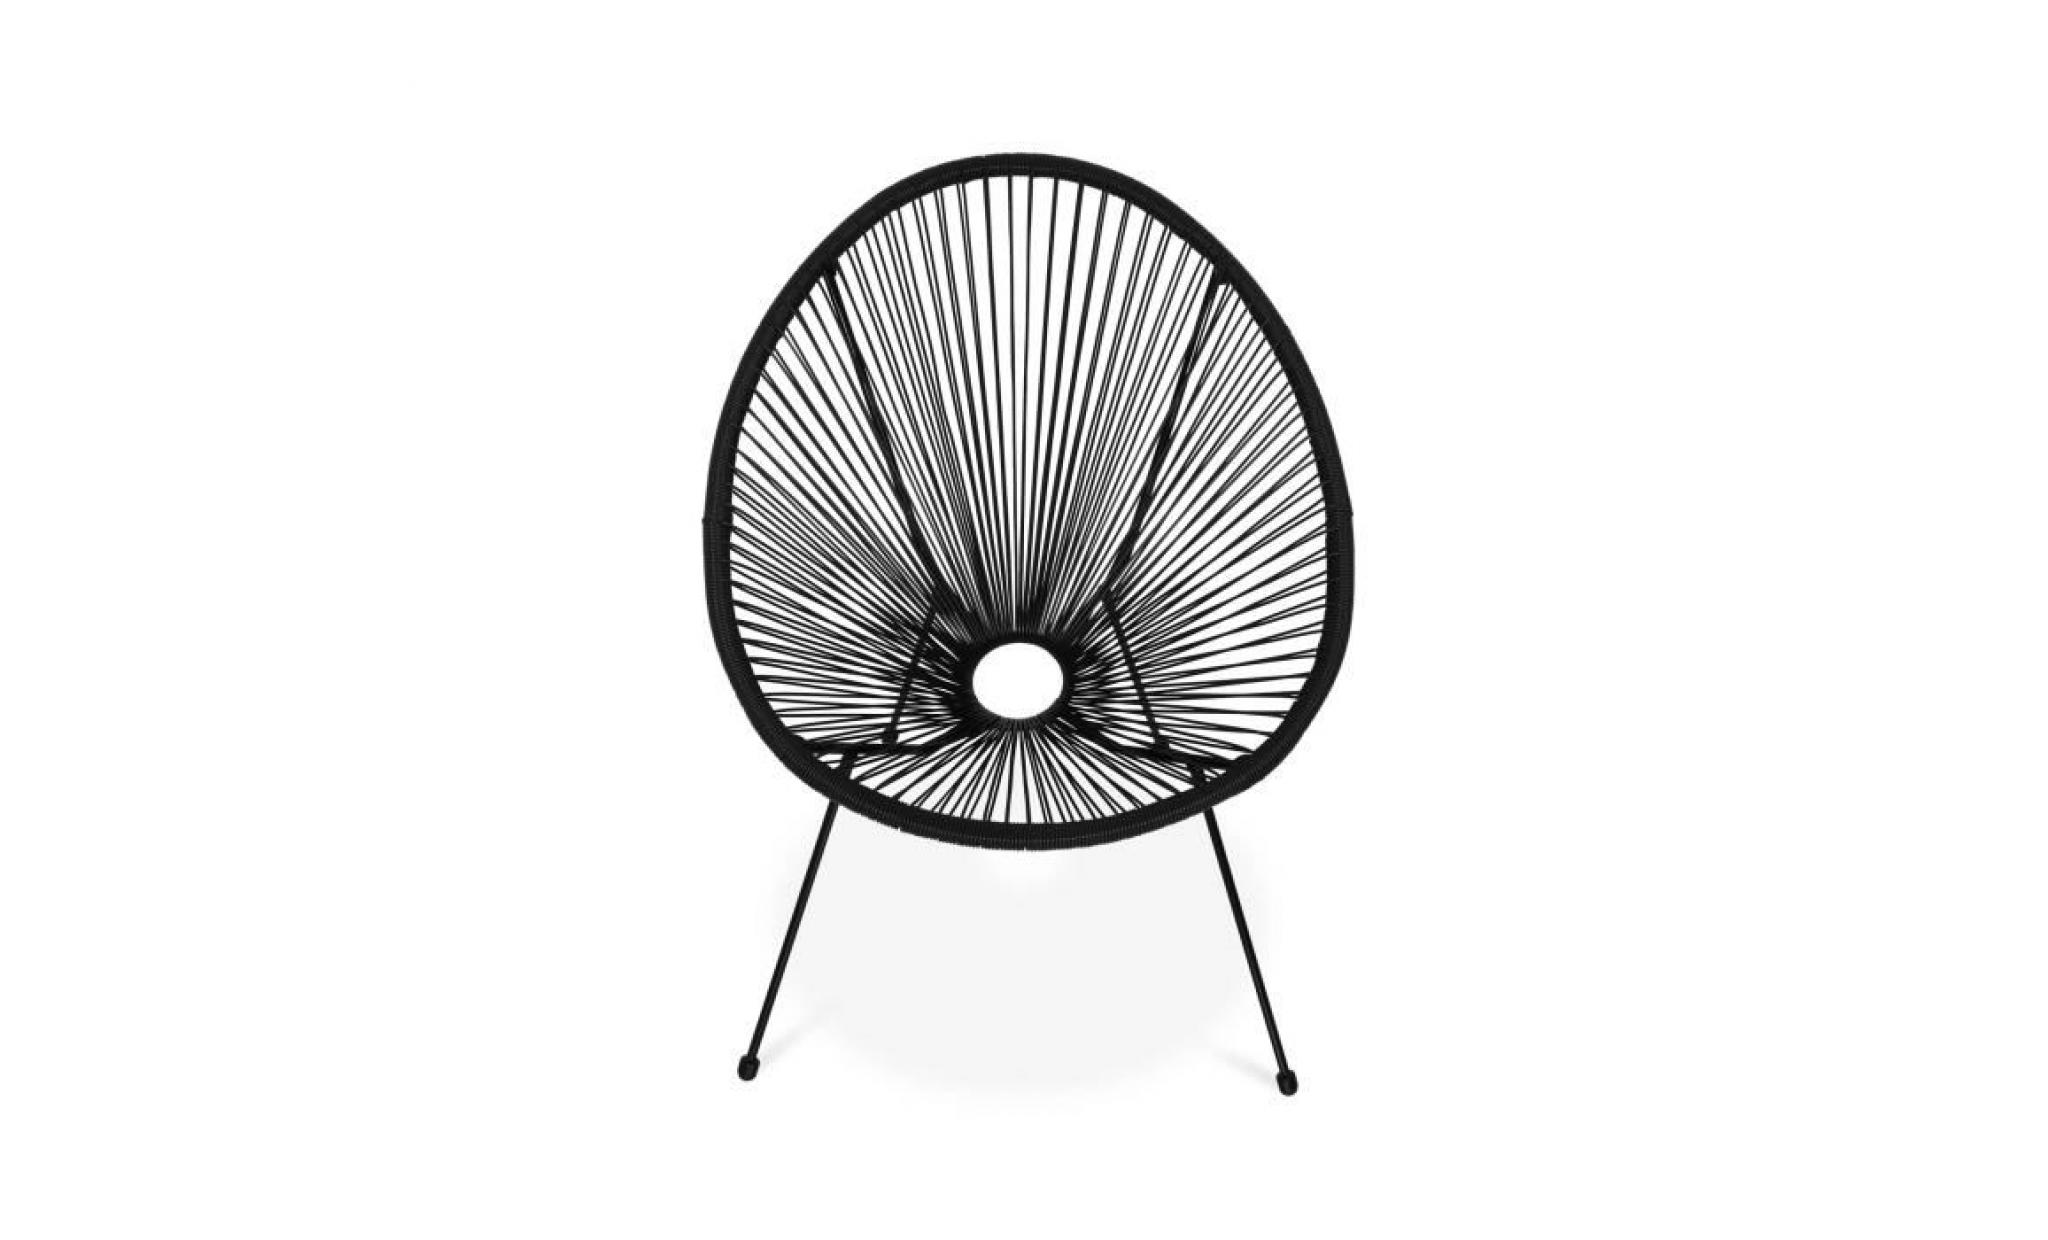 lot de 2 fauteuils design oeuf   acapulco noir   fauteuils 4 pieds design rétro, cordage plastique, intérieur / extérieur pas cher